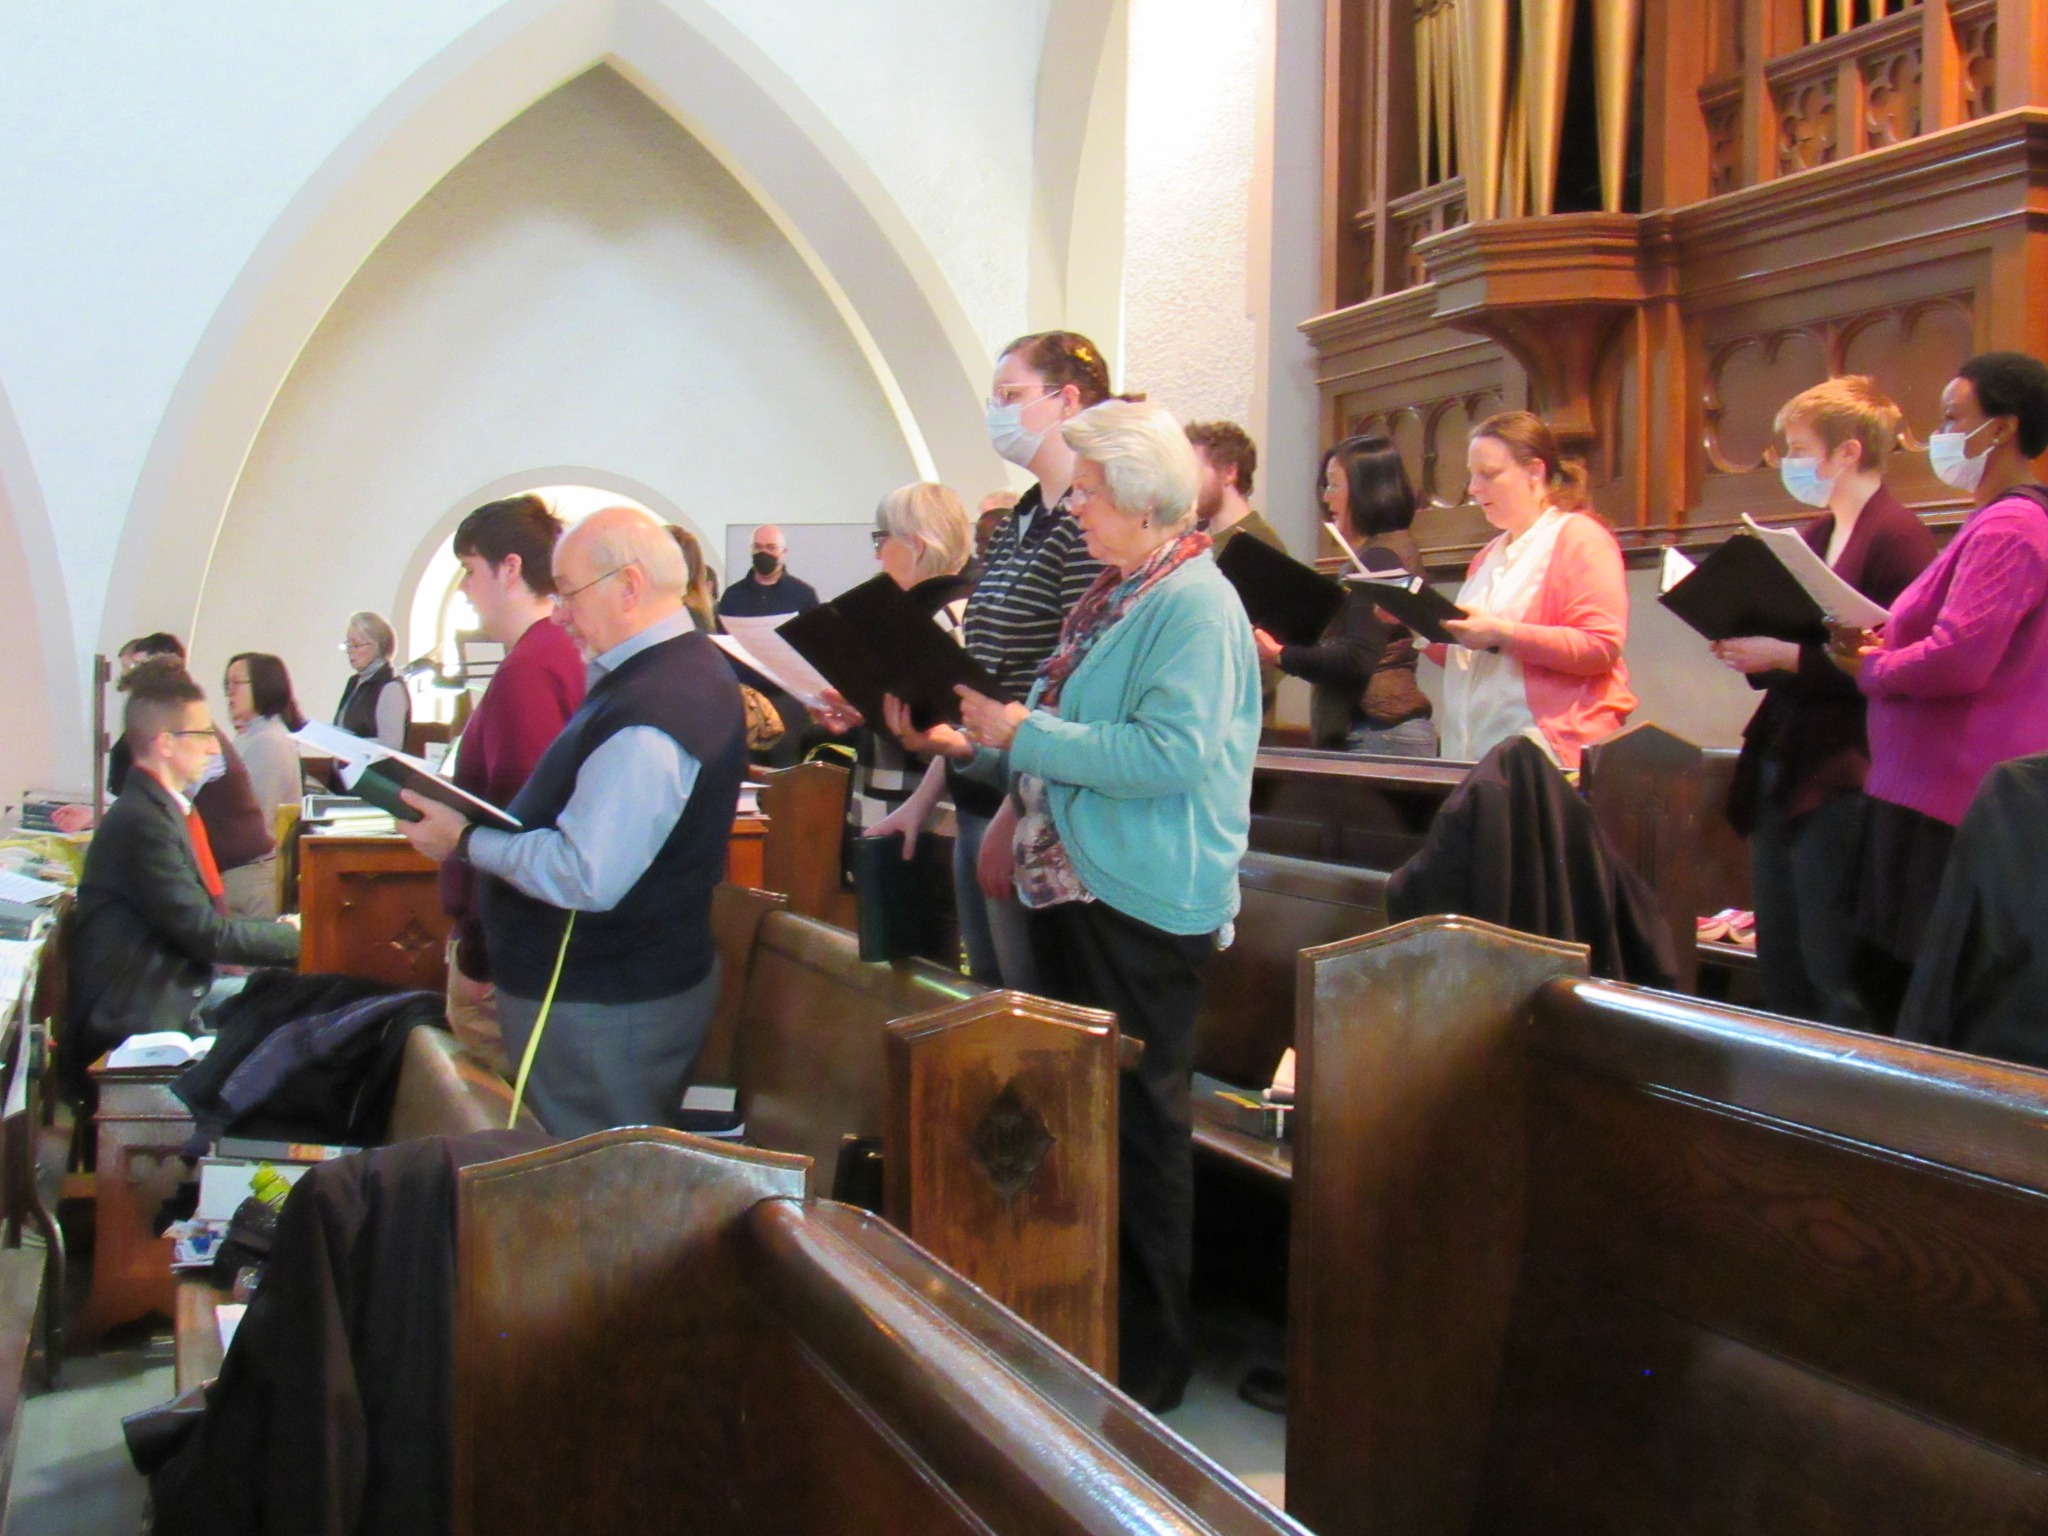 The St. Joseph's Parish Choir